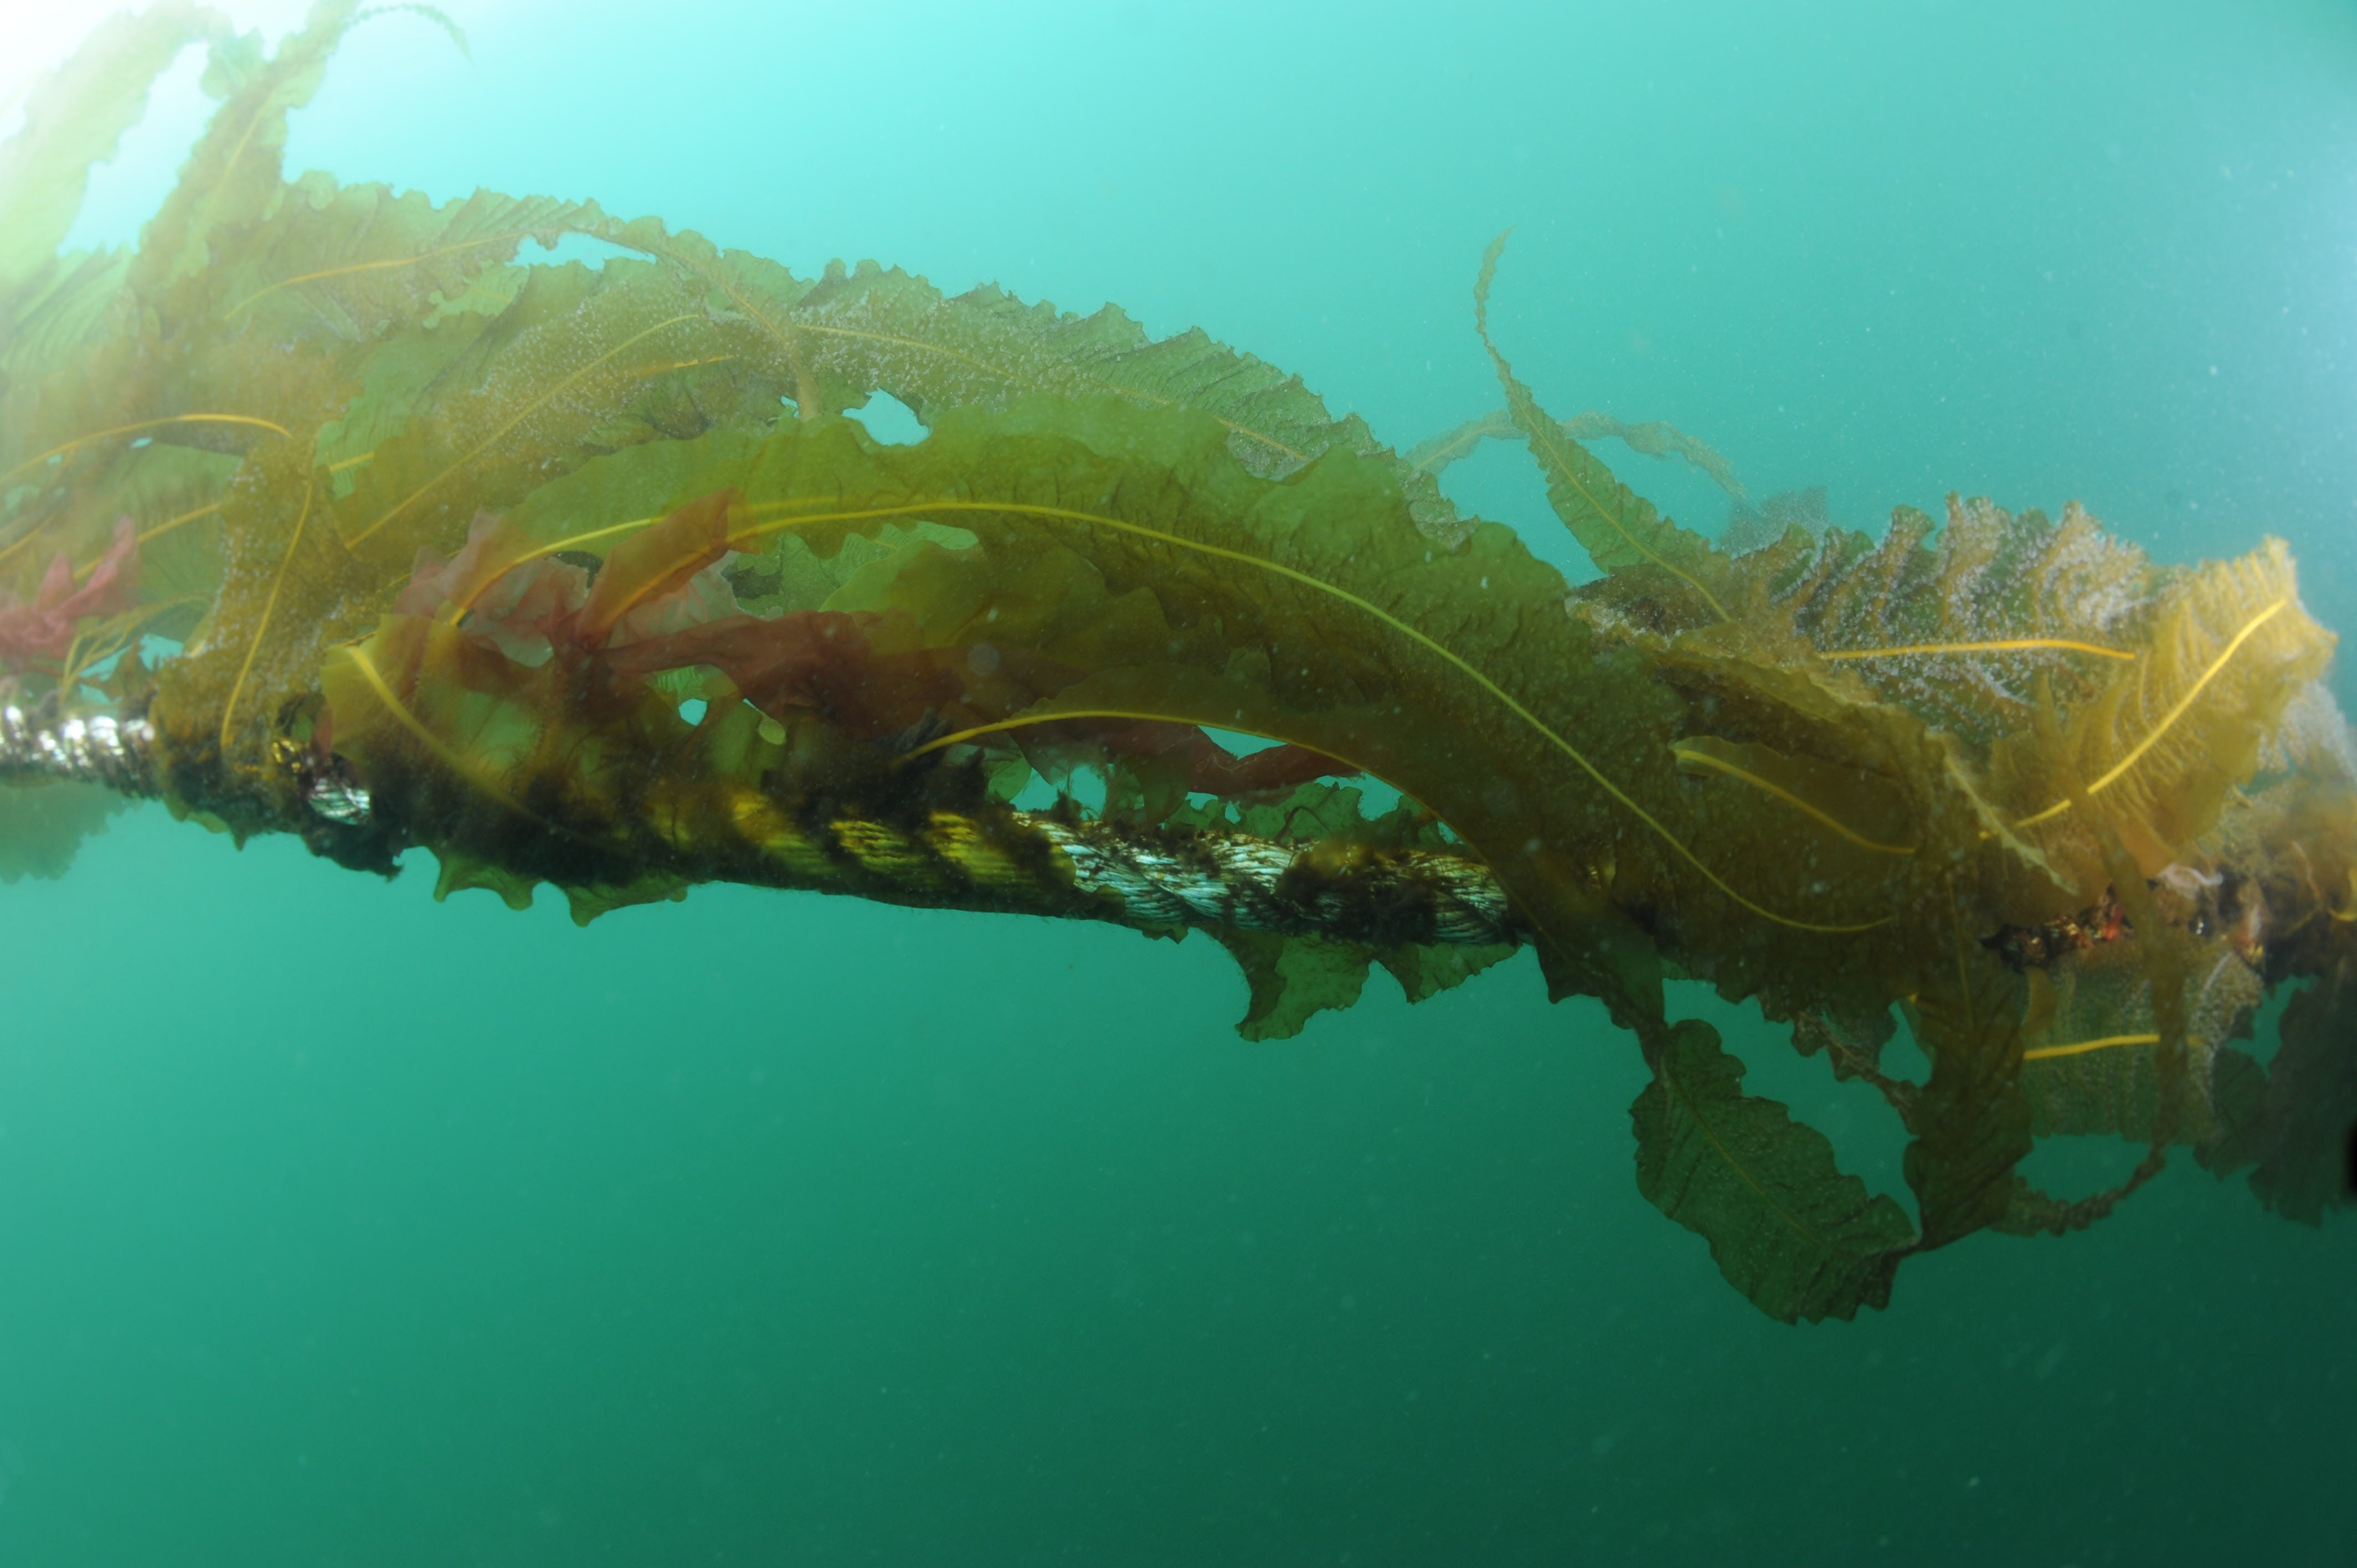 seaweed rope